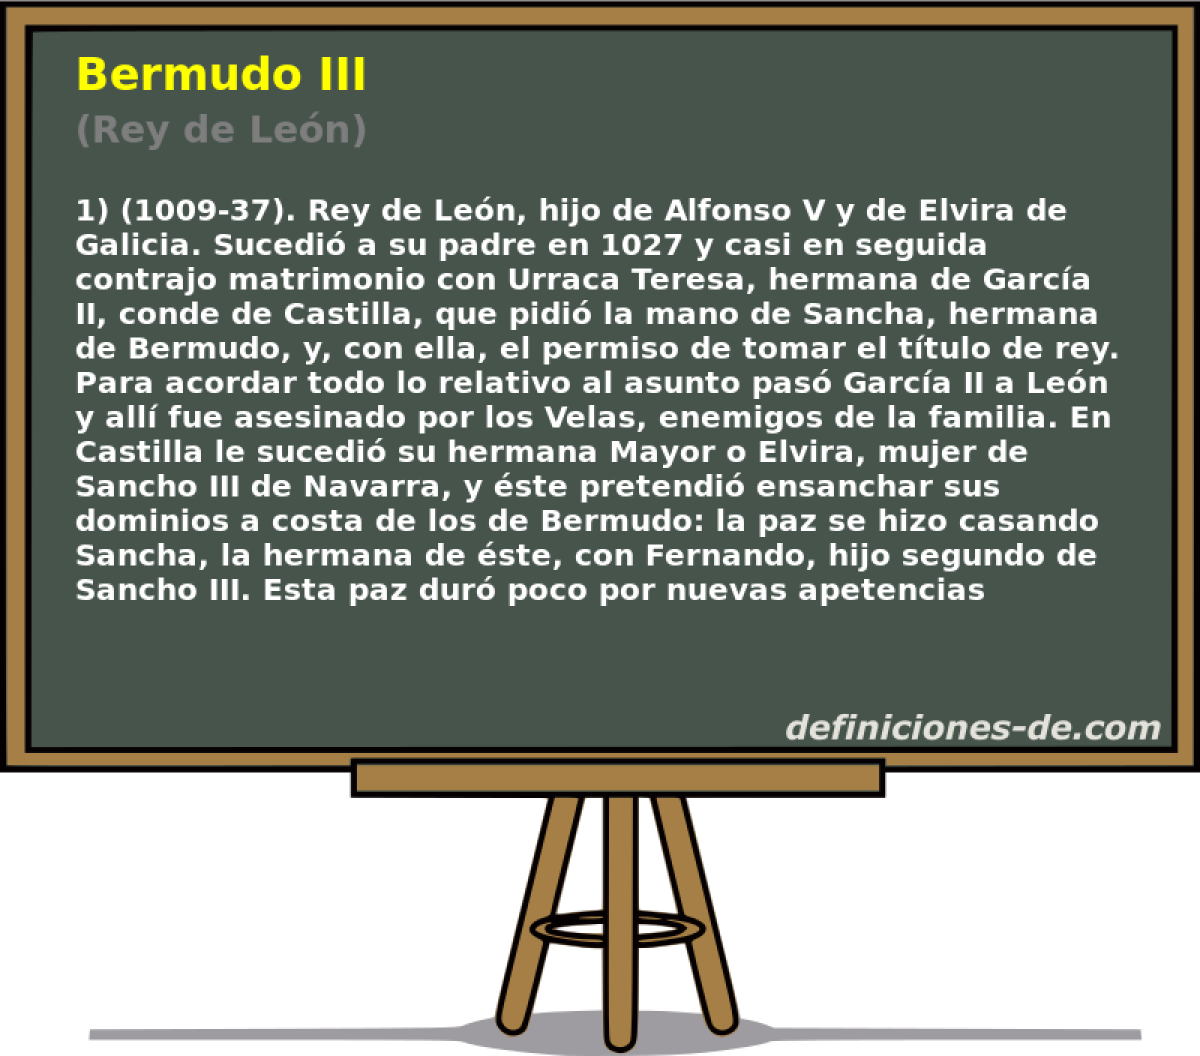 Bermudo III (Rey de Len)